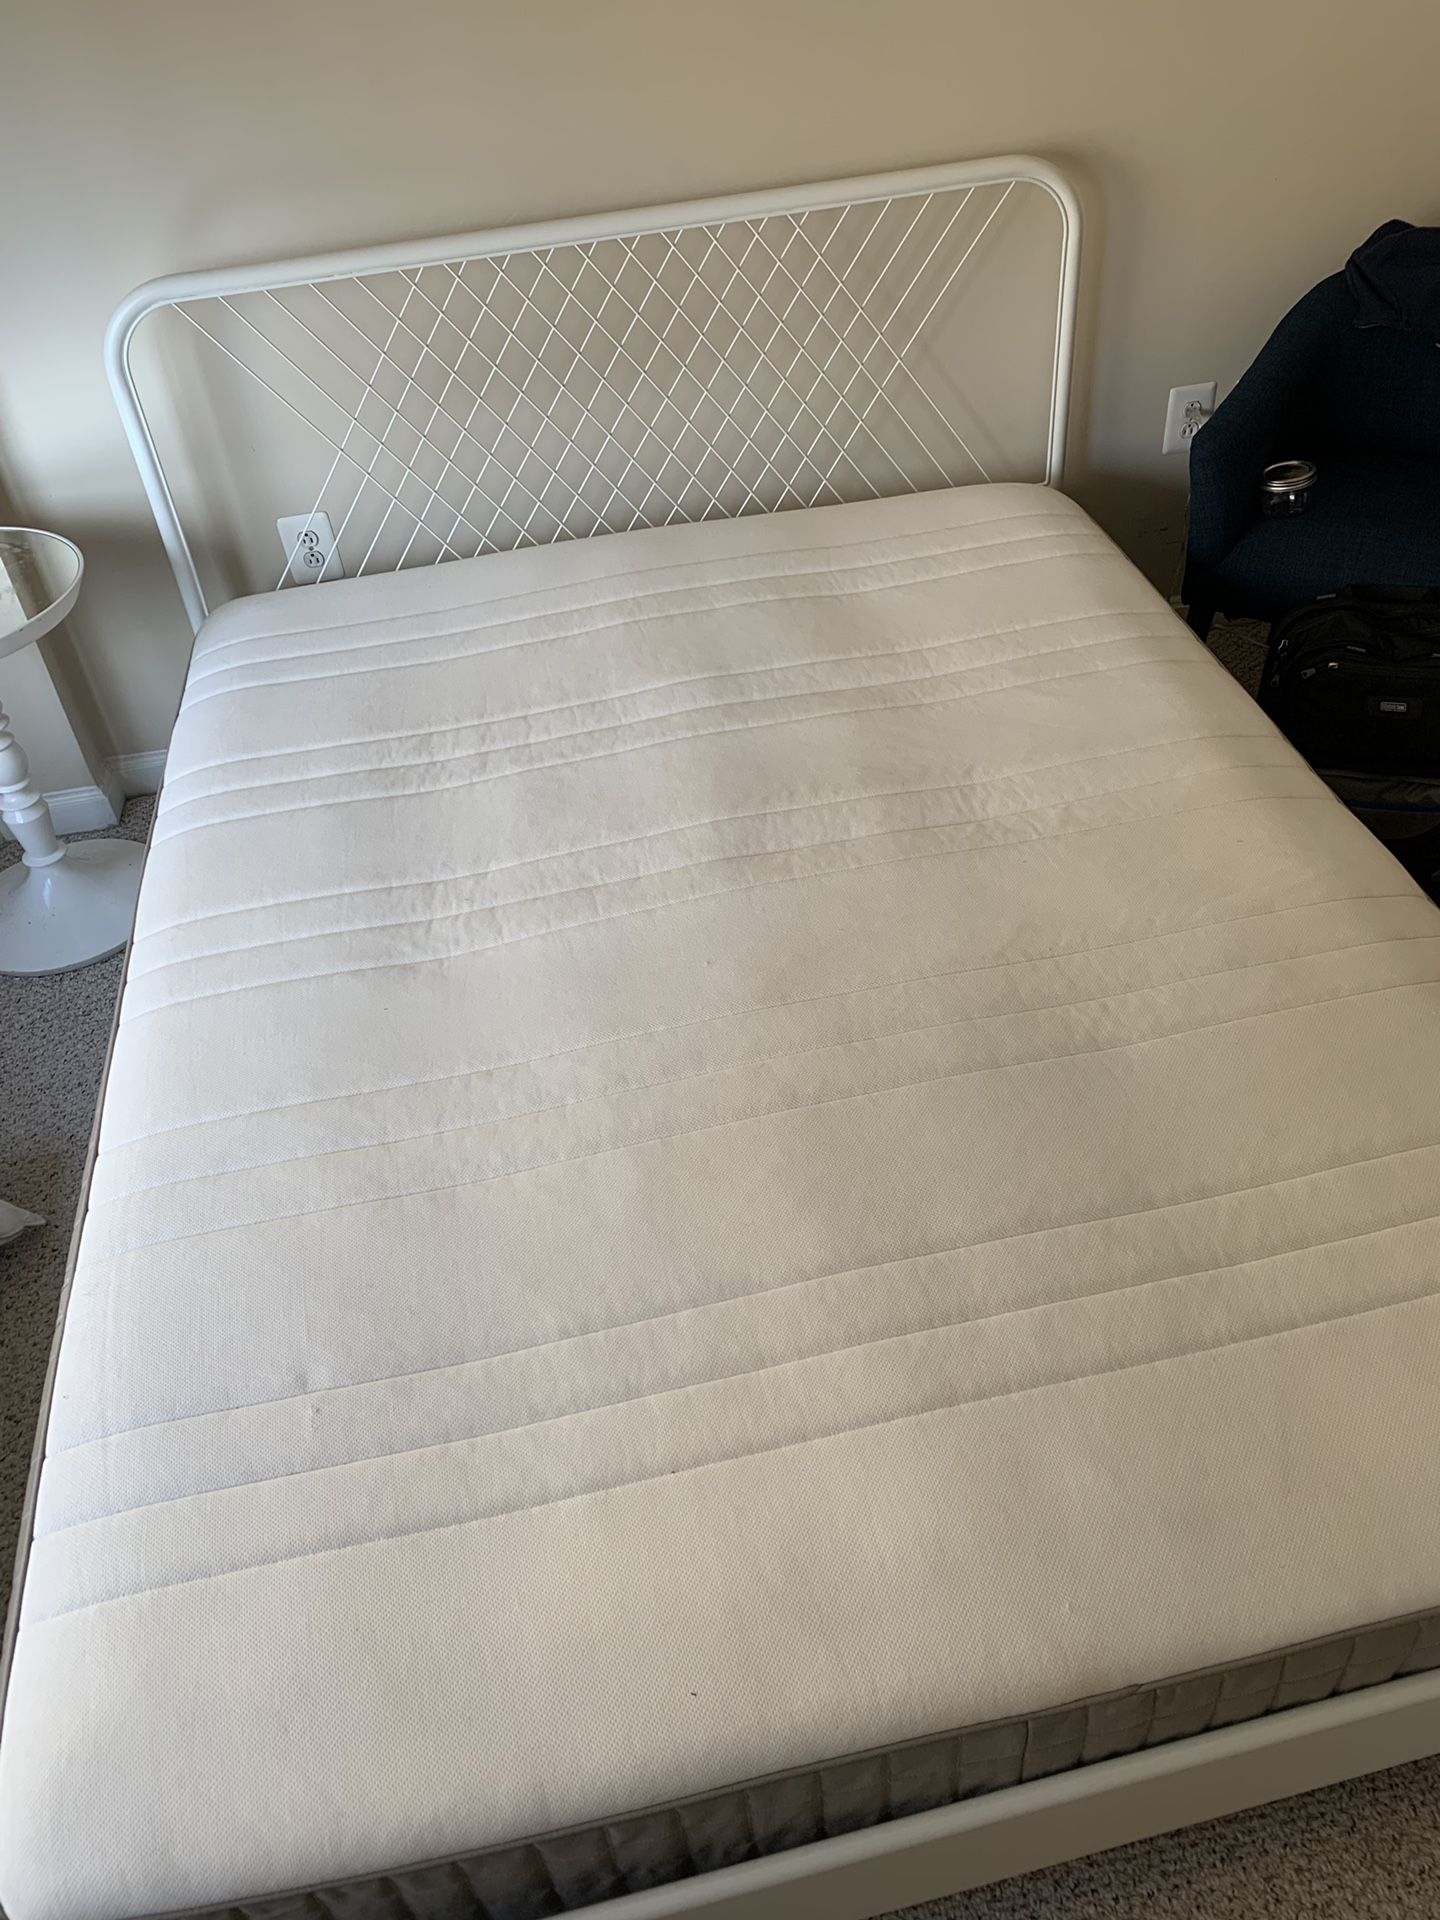 Queen IKEA bed